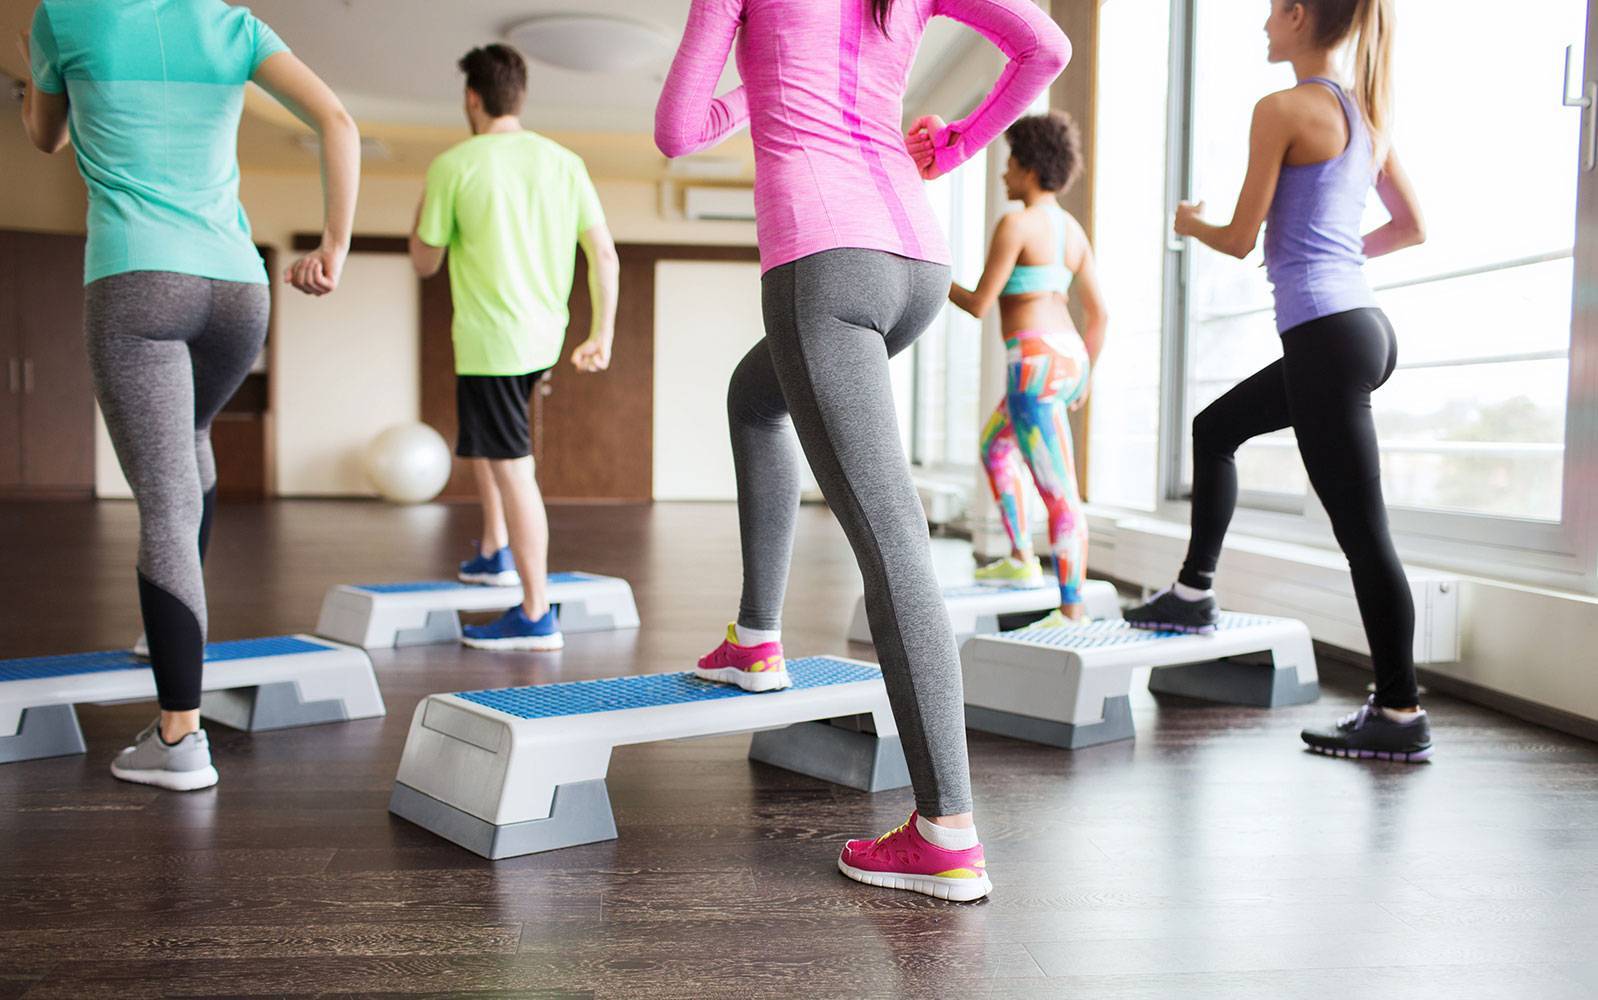 15 лучших упражнений с платформой для похудения – видео уроки занятий на степ платформе